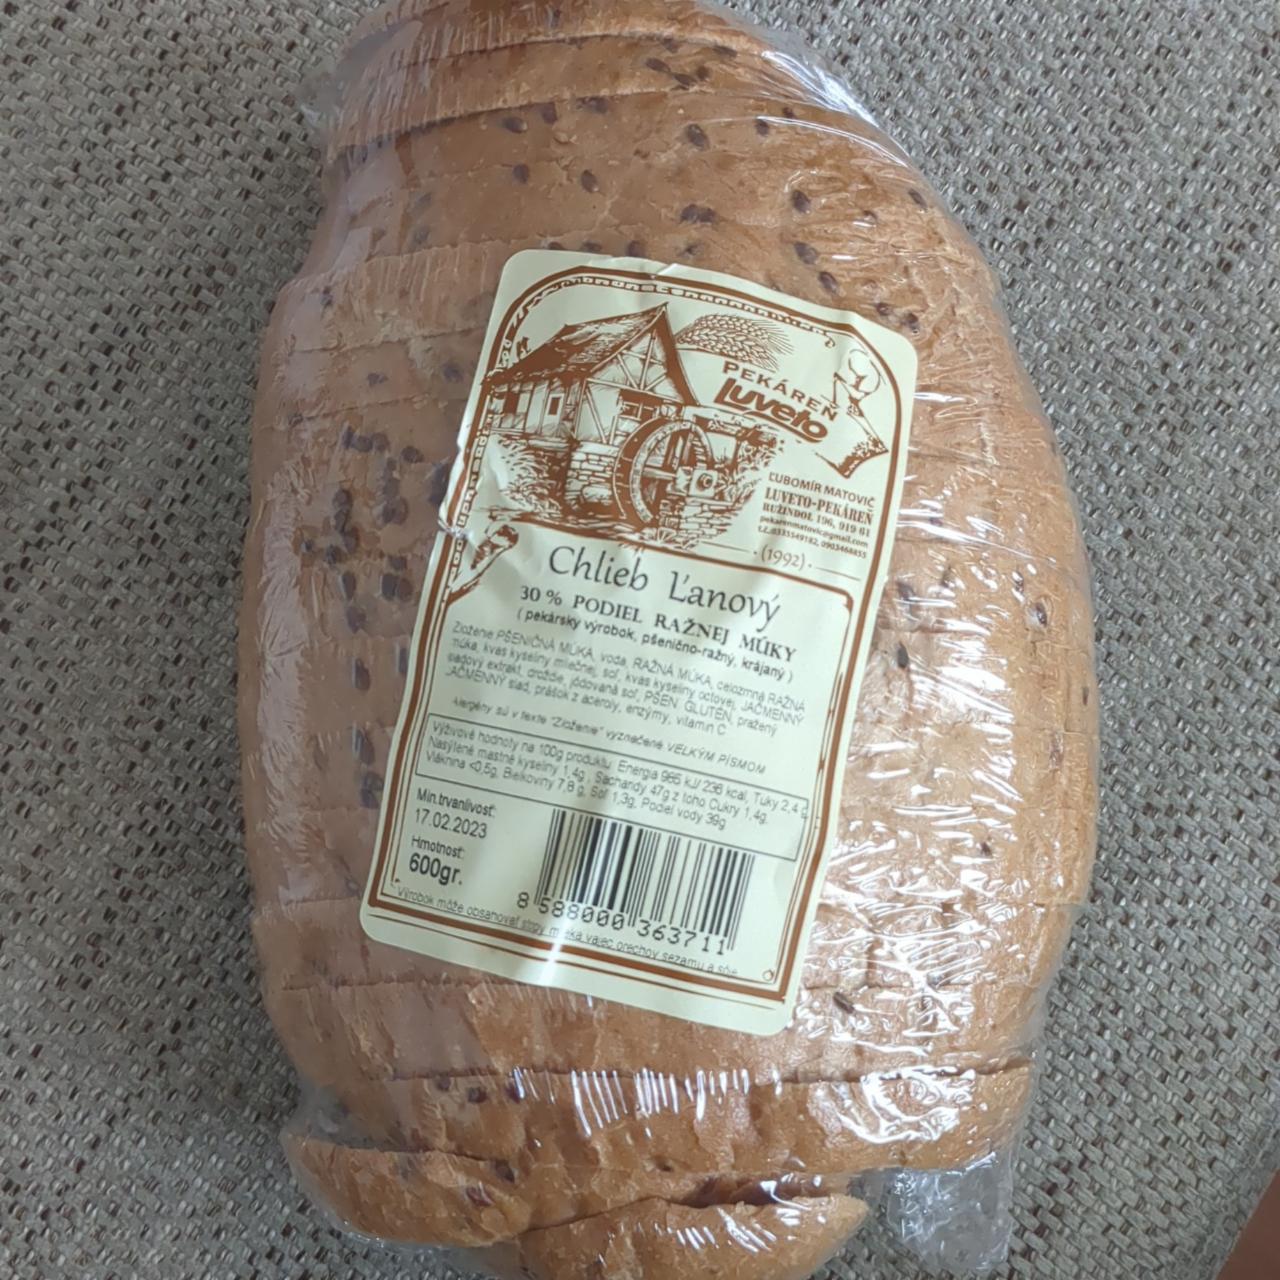 Fotografie - Chlieb ľanový 30% podiel ražnej múky Luveto